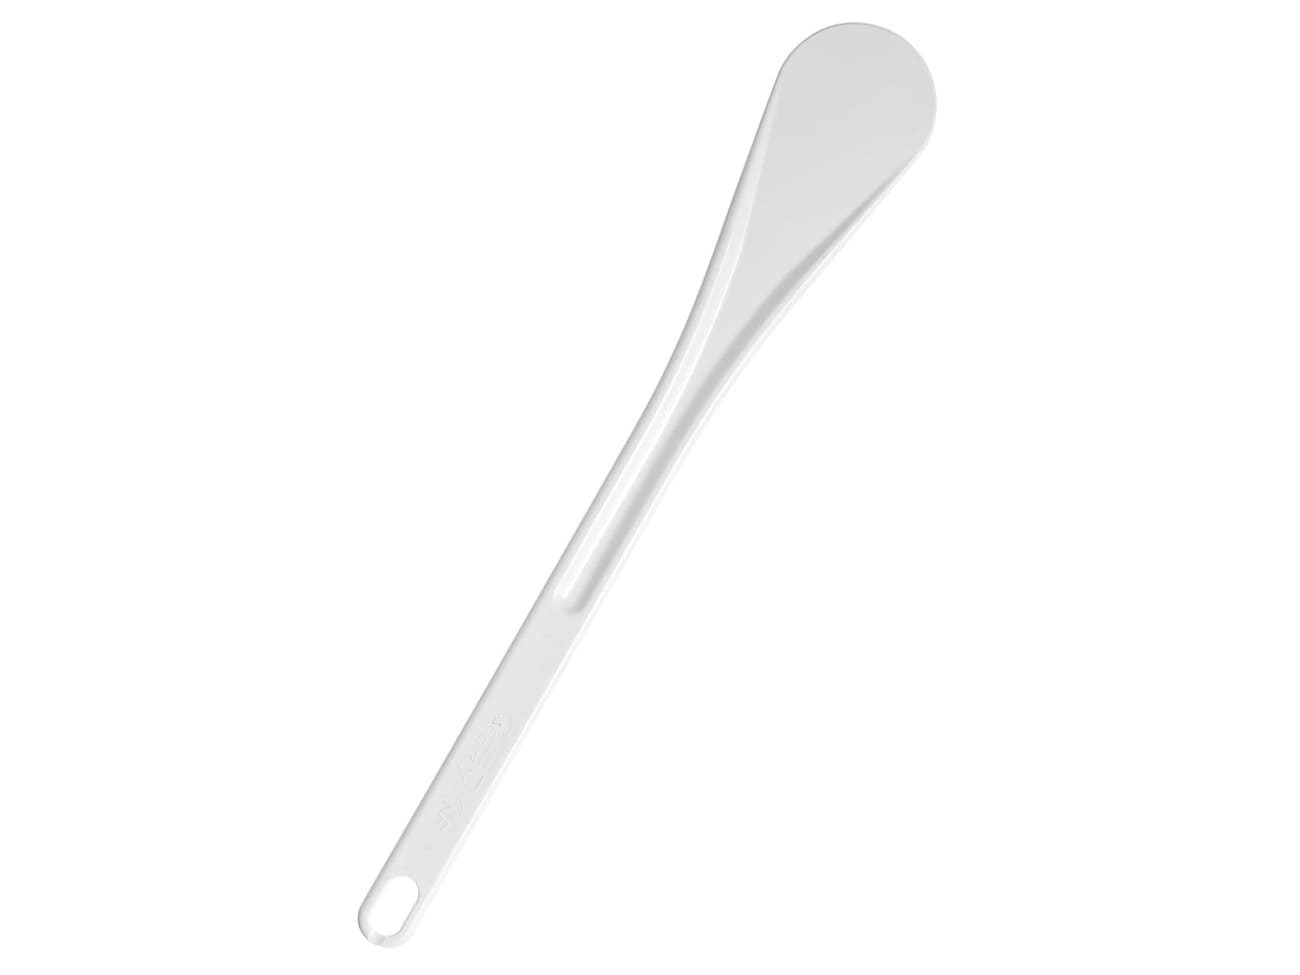 https://files.meilleurduchef.com/mdc/photo/product/mfr/exoglass-spatula-30/exoglass-spatula-30-1-main-1300.jpg